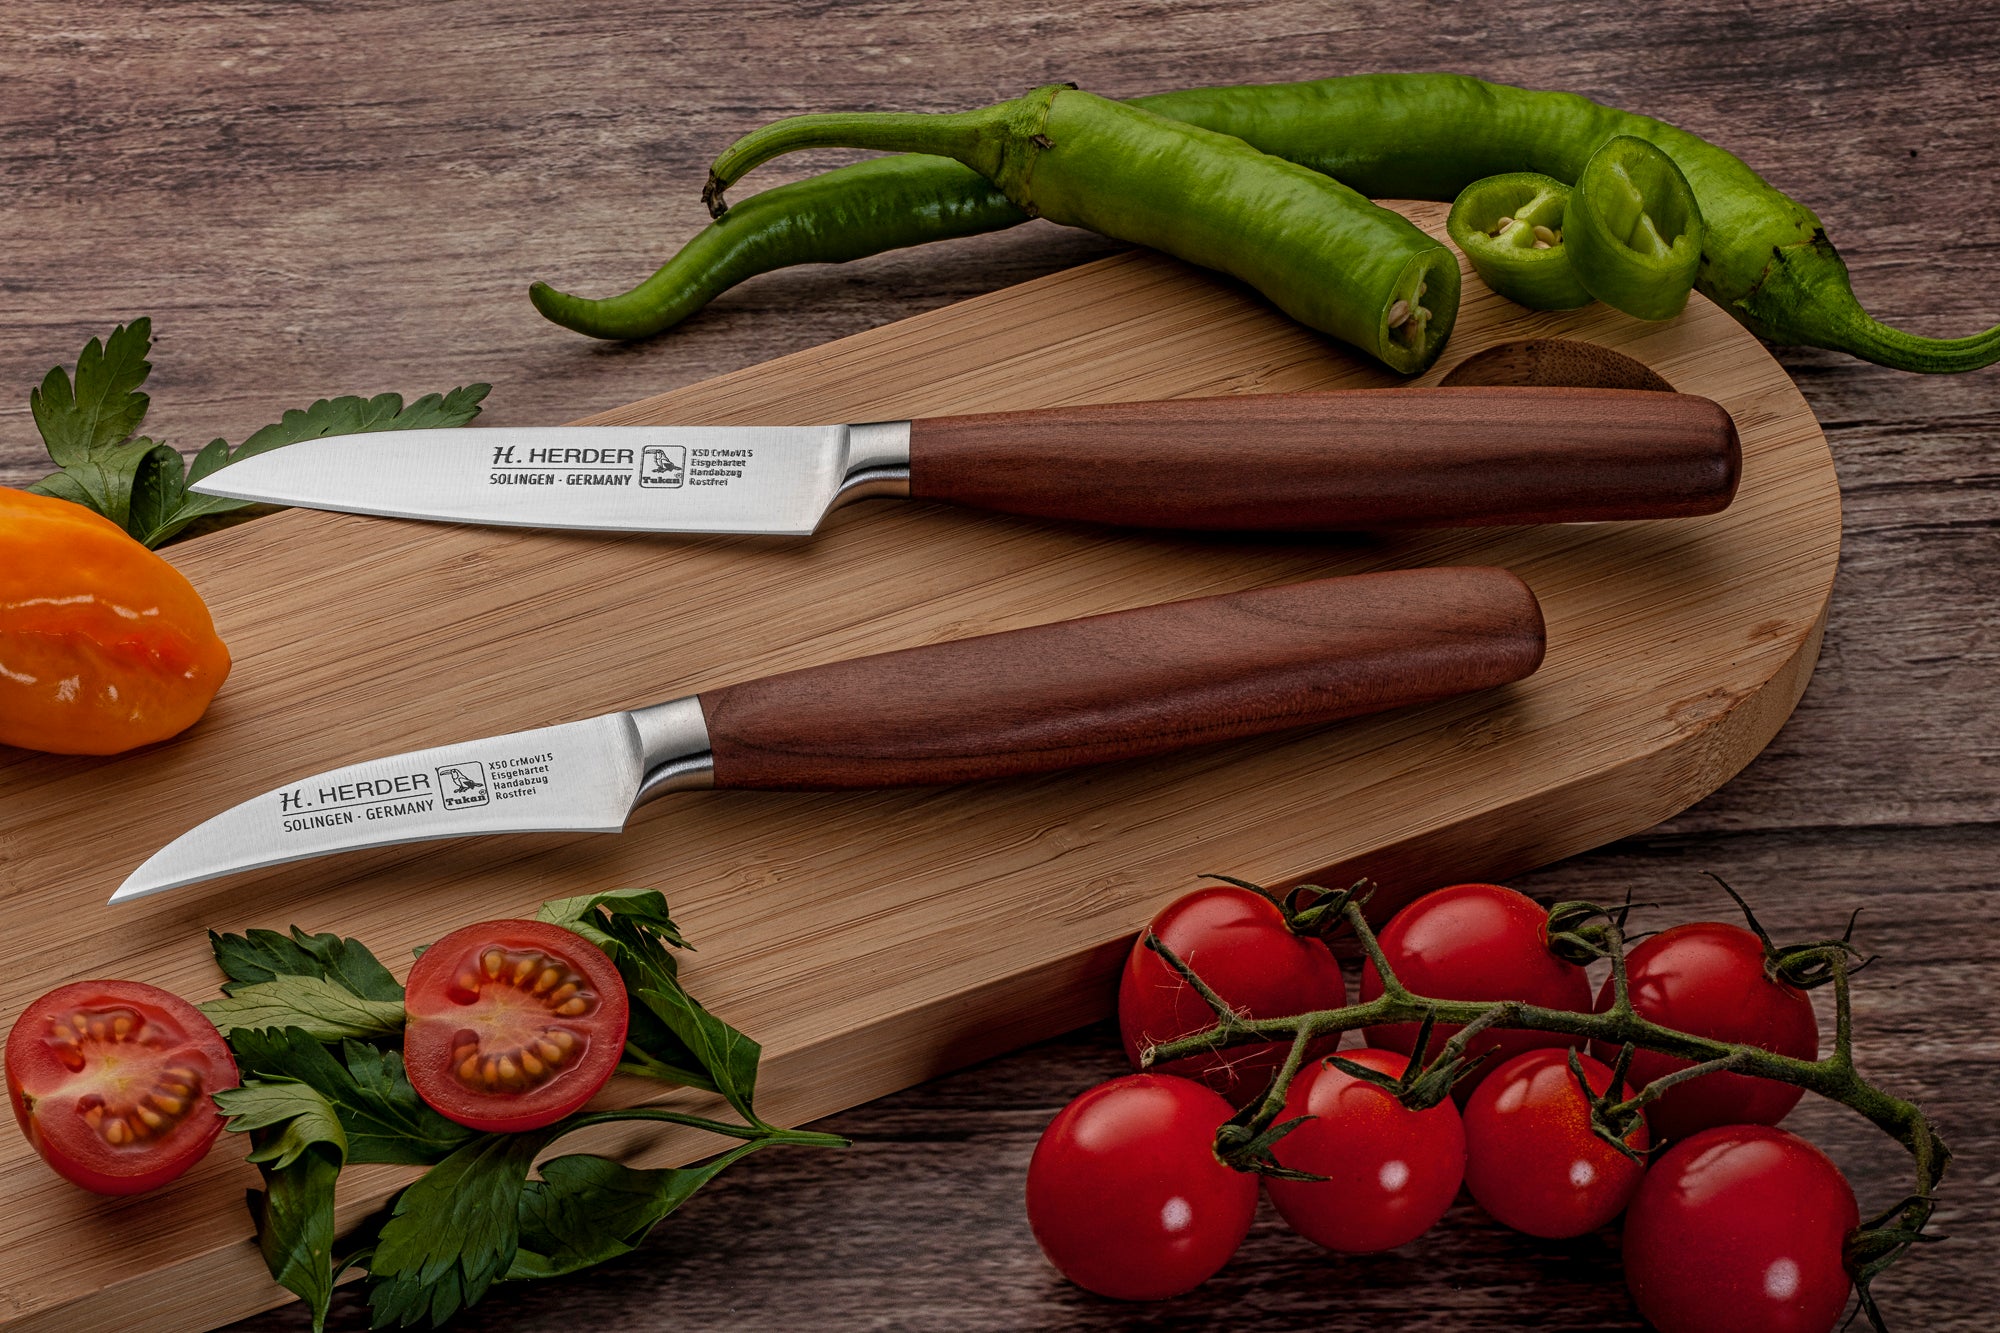 Couteau à légumes Eterno, bois de prunier, longueur de lame 9 cm, forgé